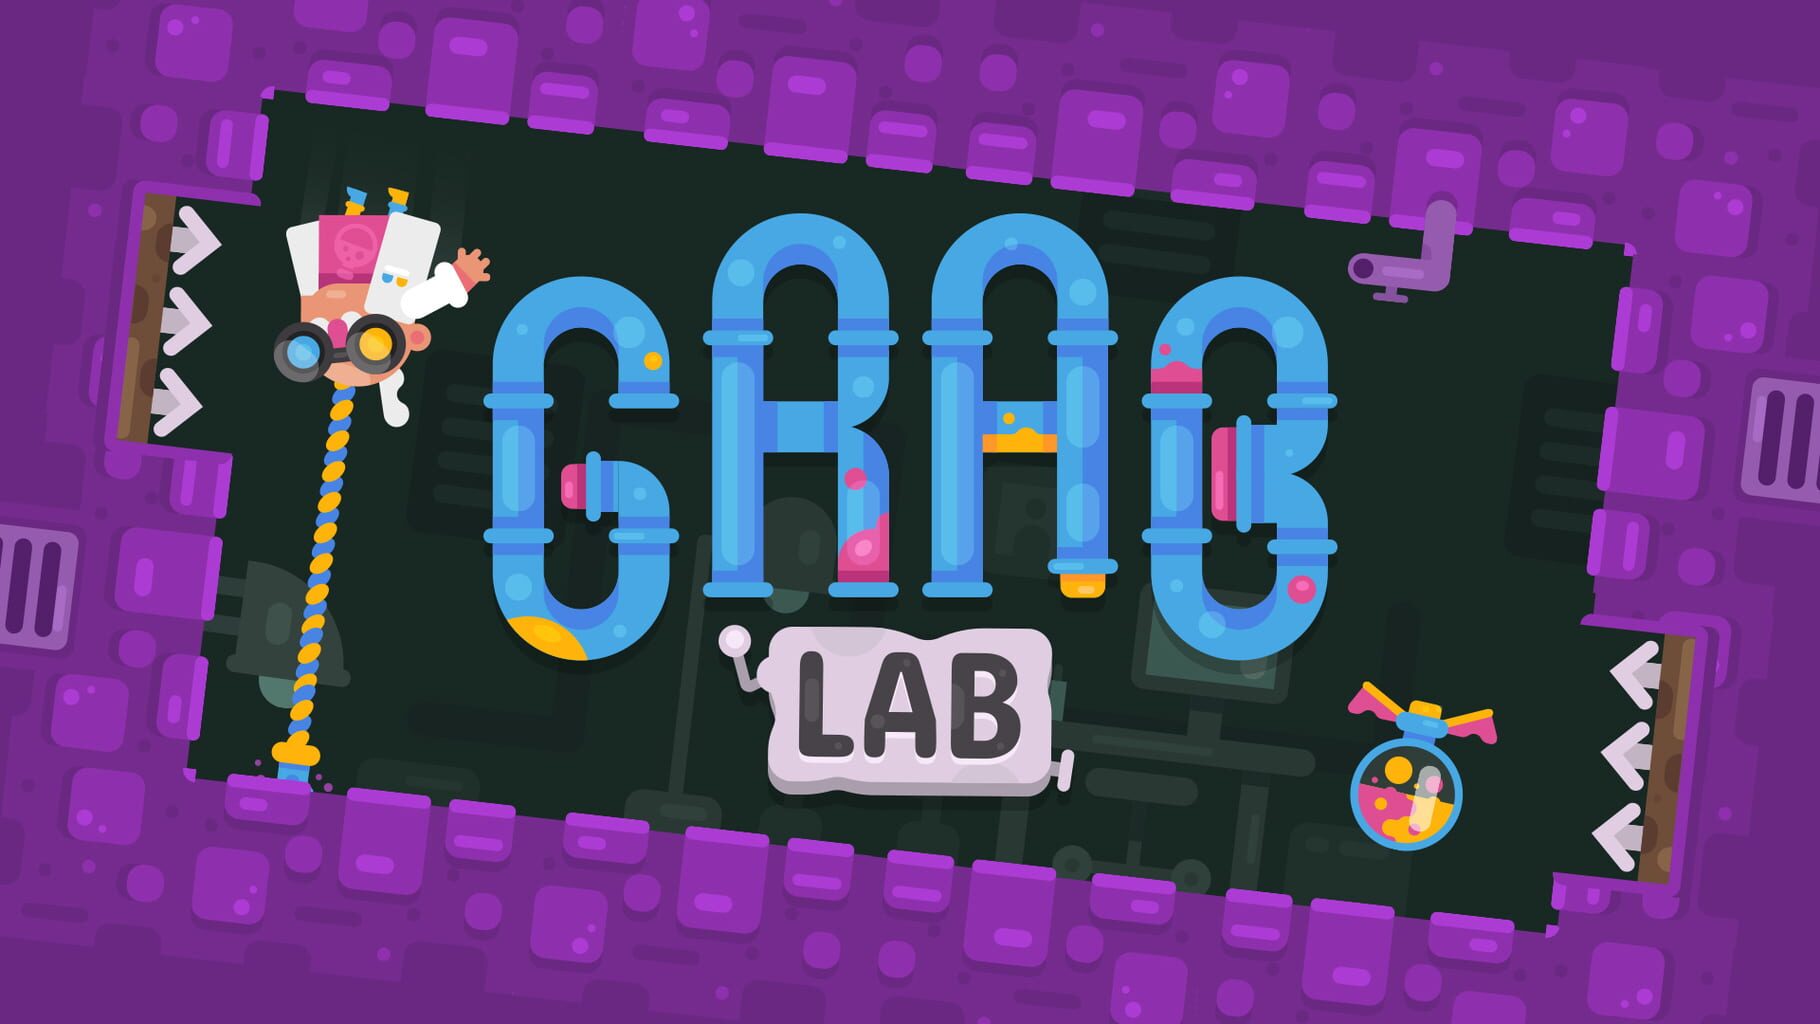 Grab Lab artwork